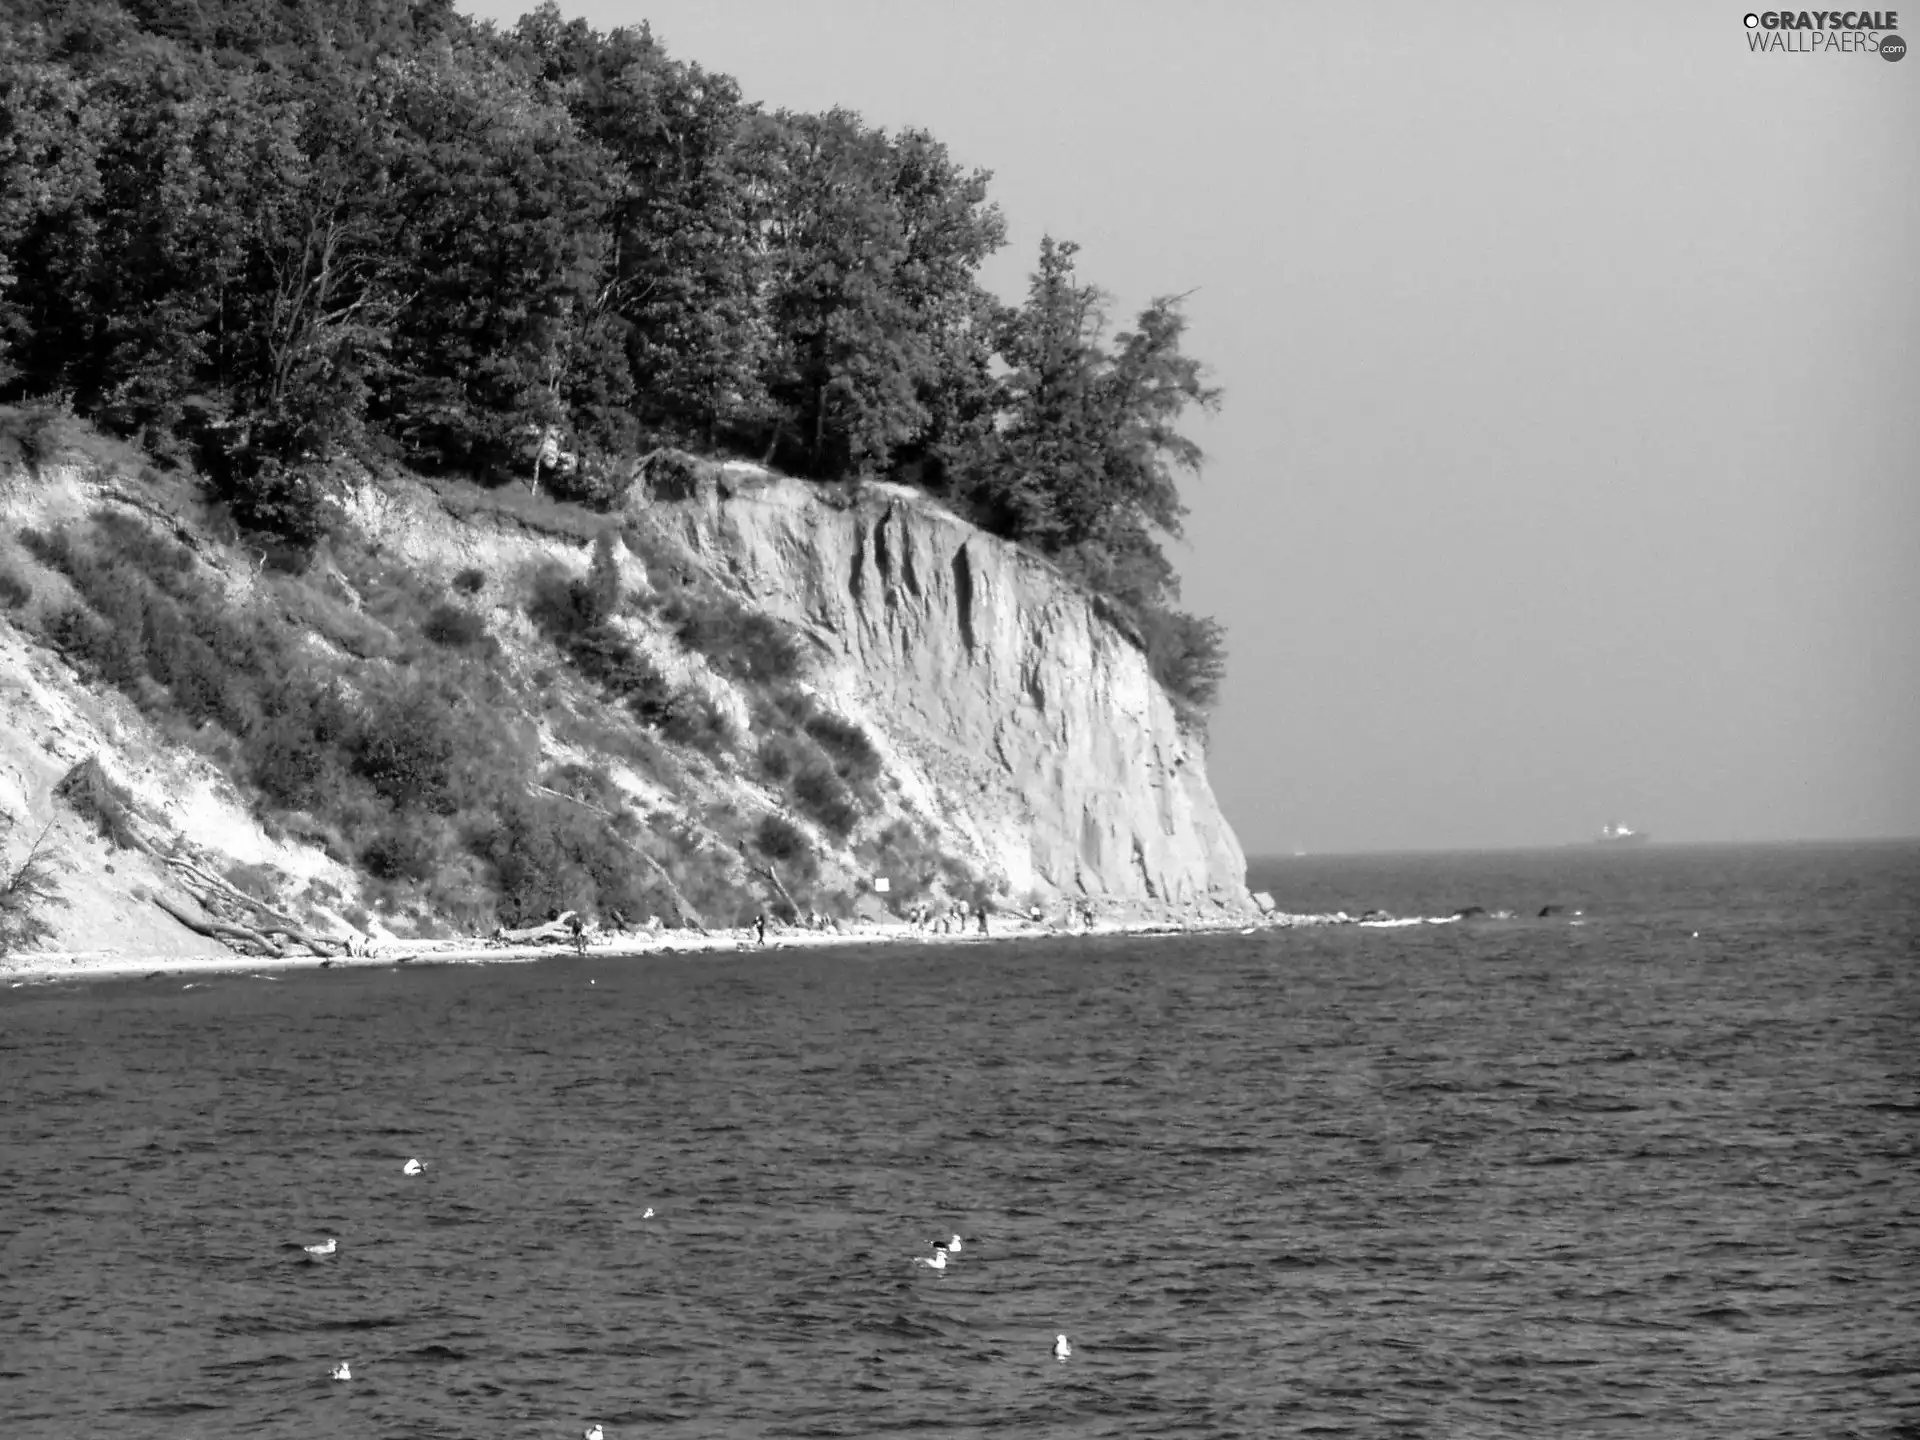 cliff, Orlowski